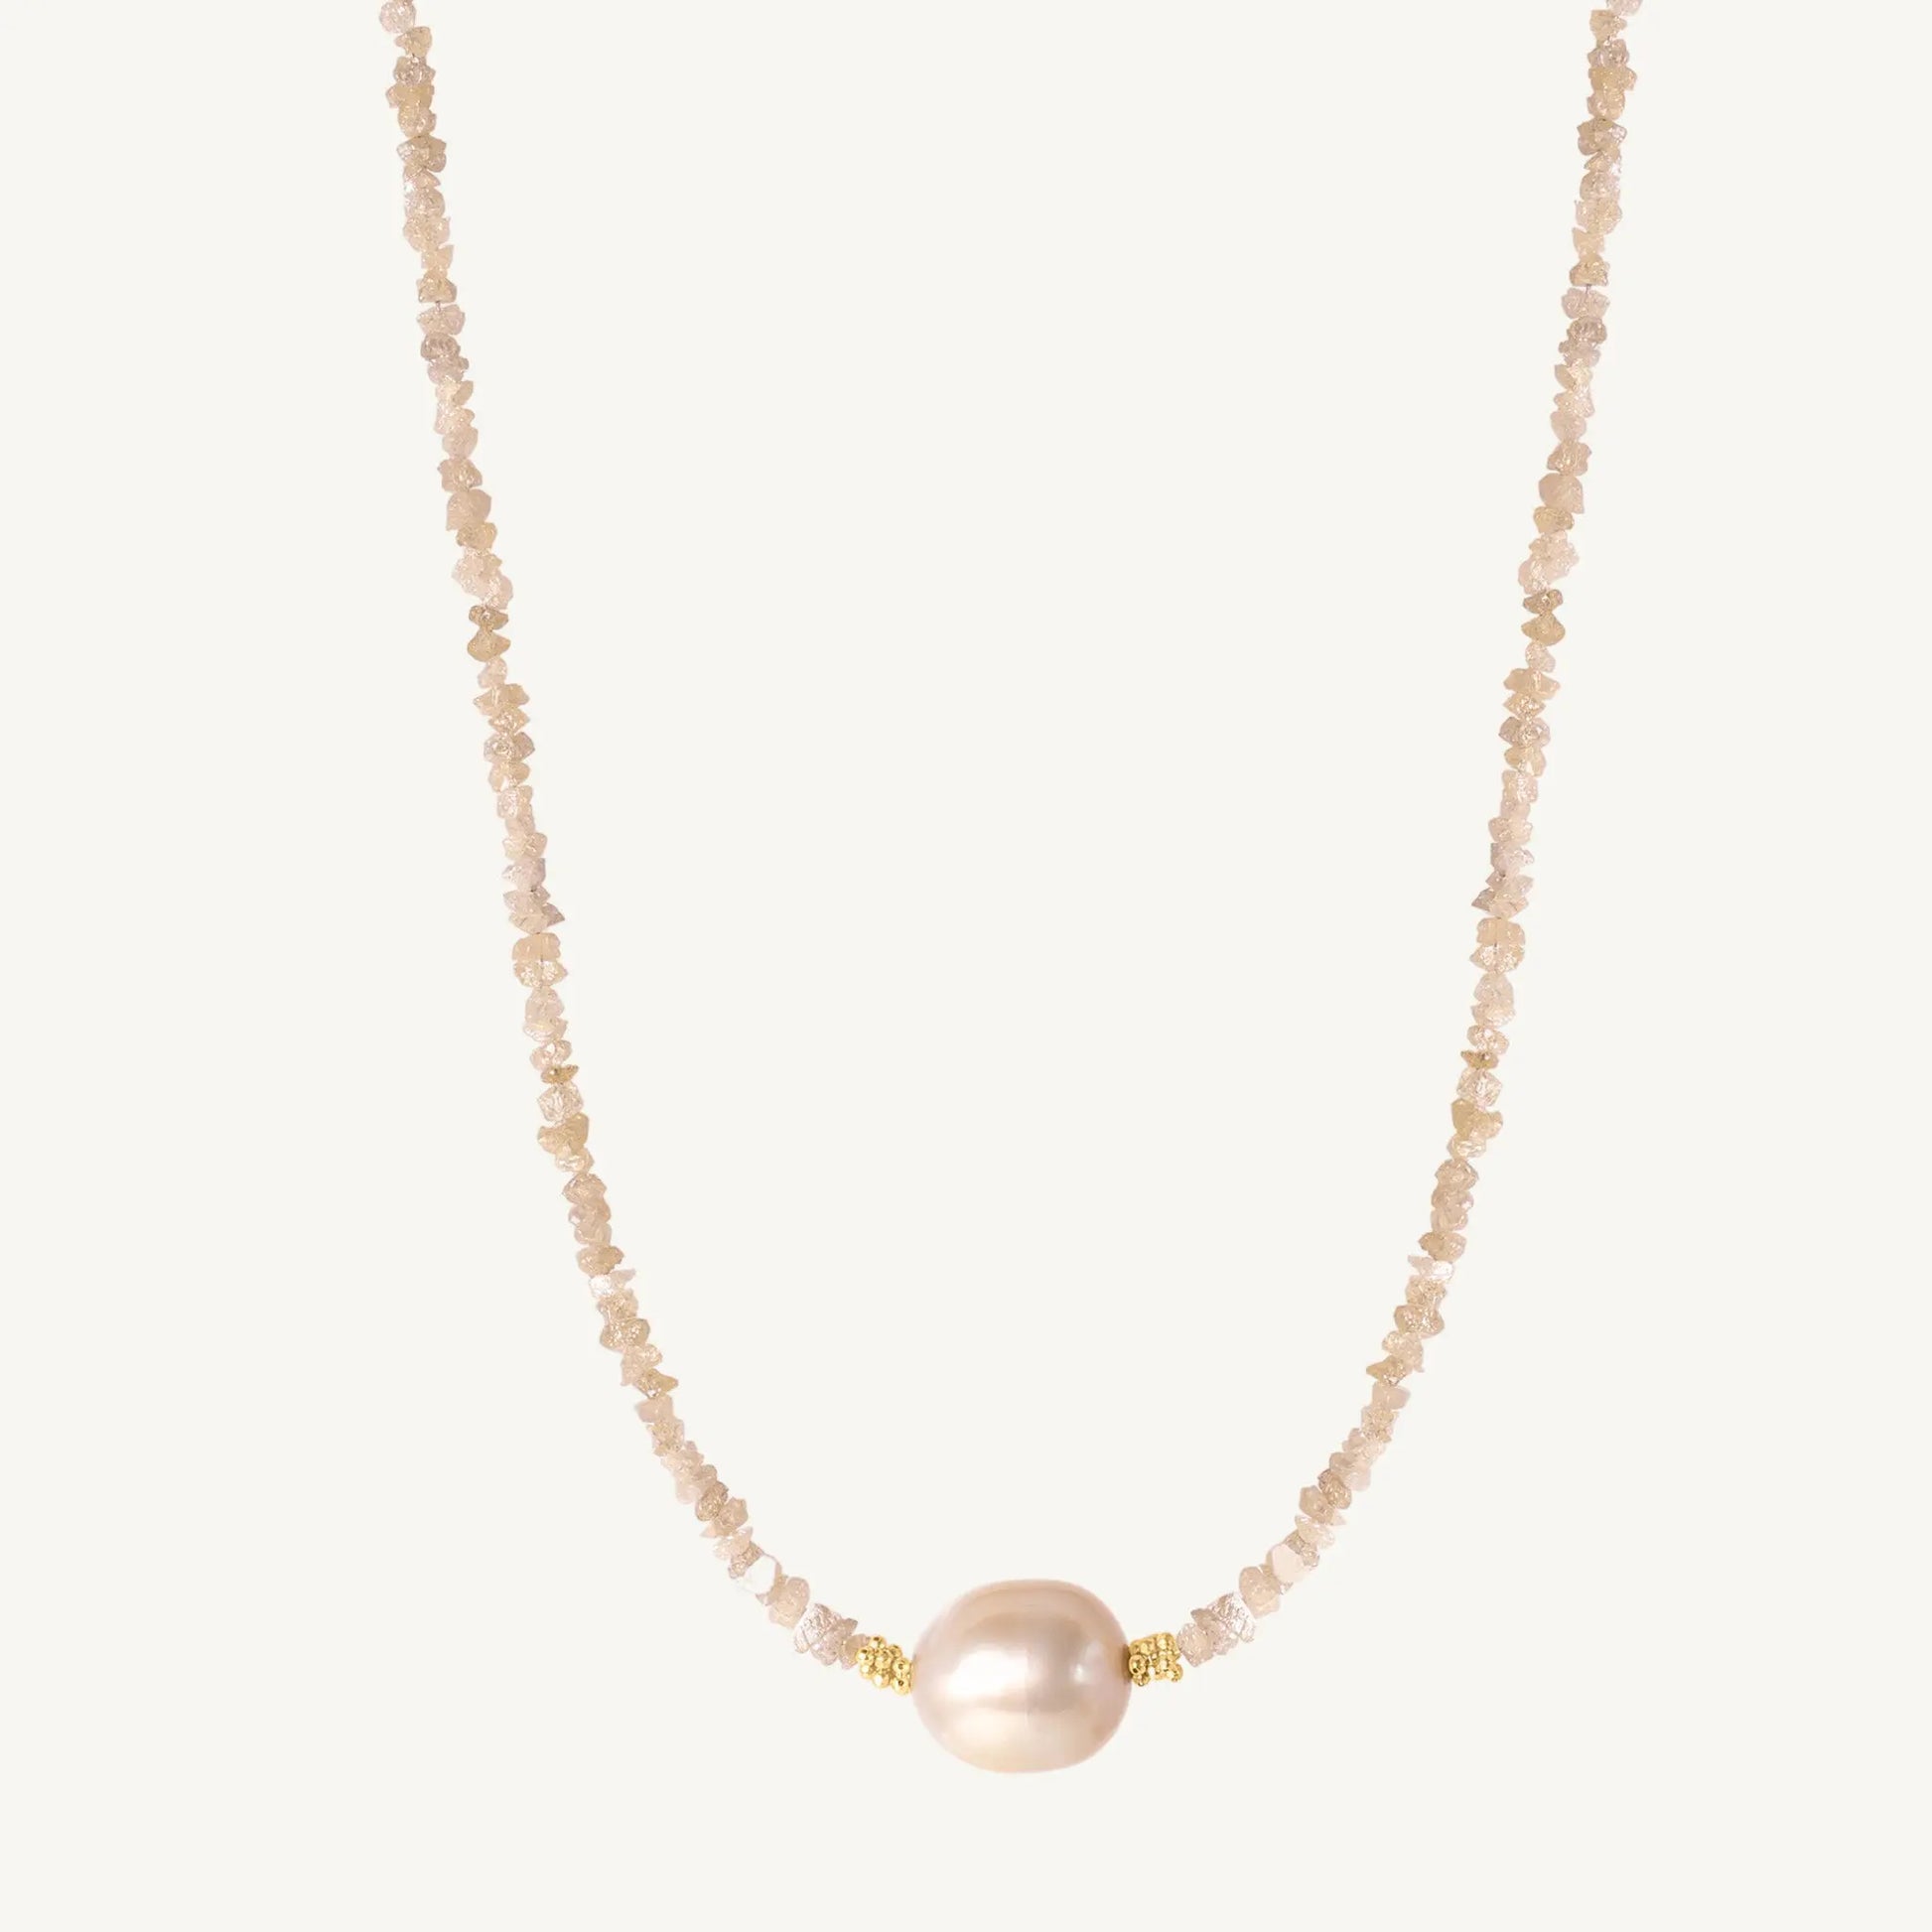 Tia Natural Diamond & South Sea Pearl Necklace 17" Jewelmak Shop